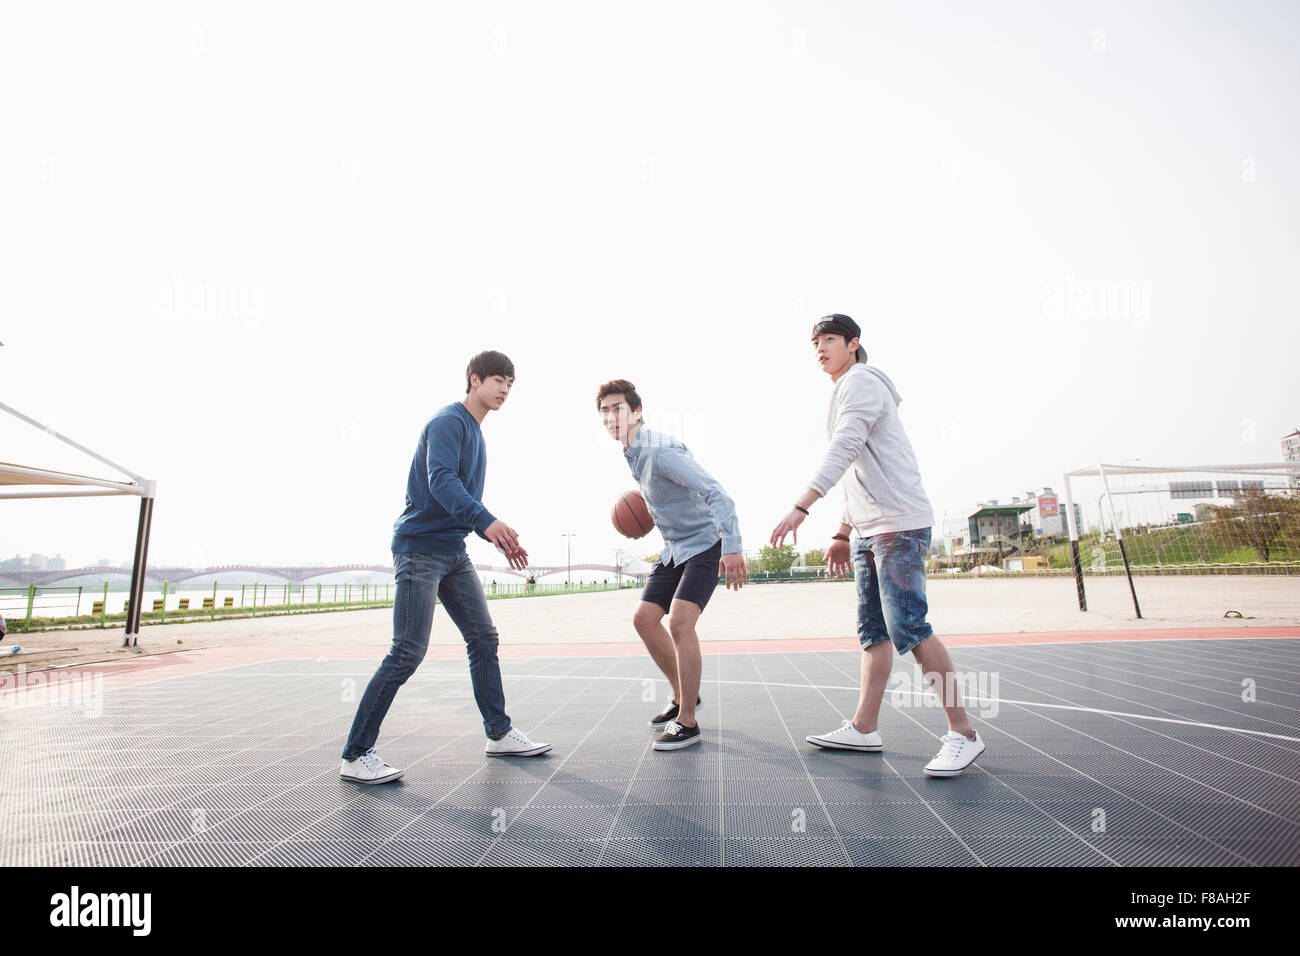 Drei Männer spielen einen Basketball auf dem Basketballplatz Stockfoto